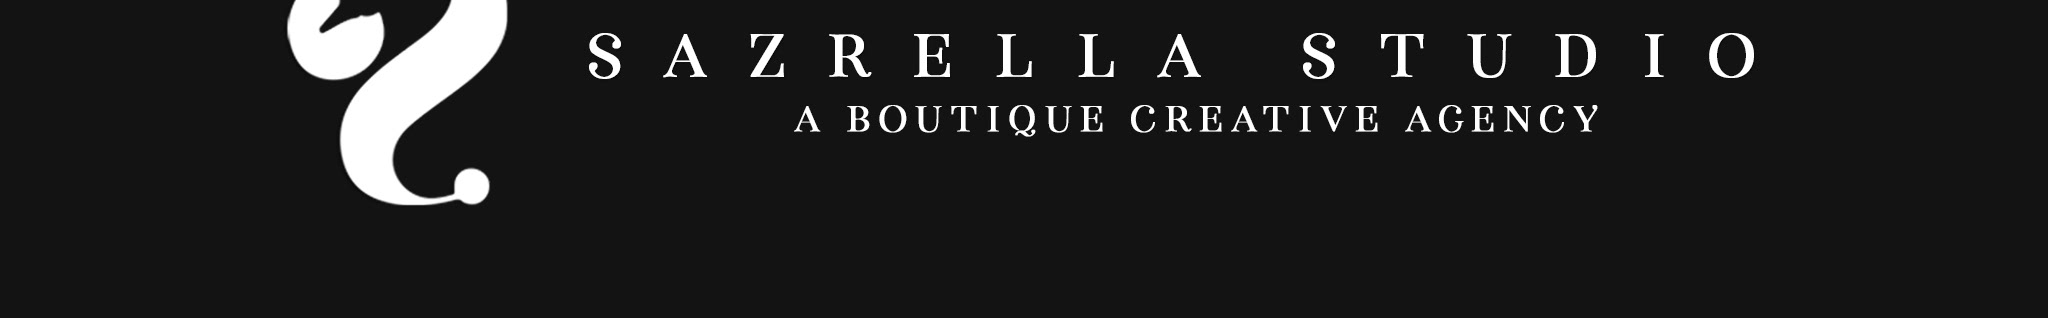 Sazrella Studio's profile banner